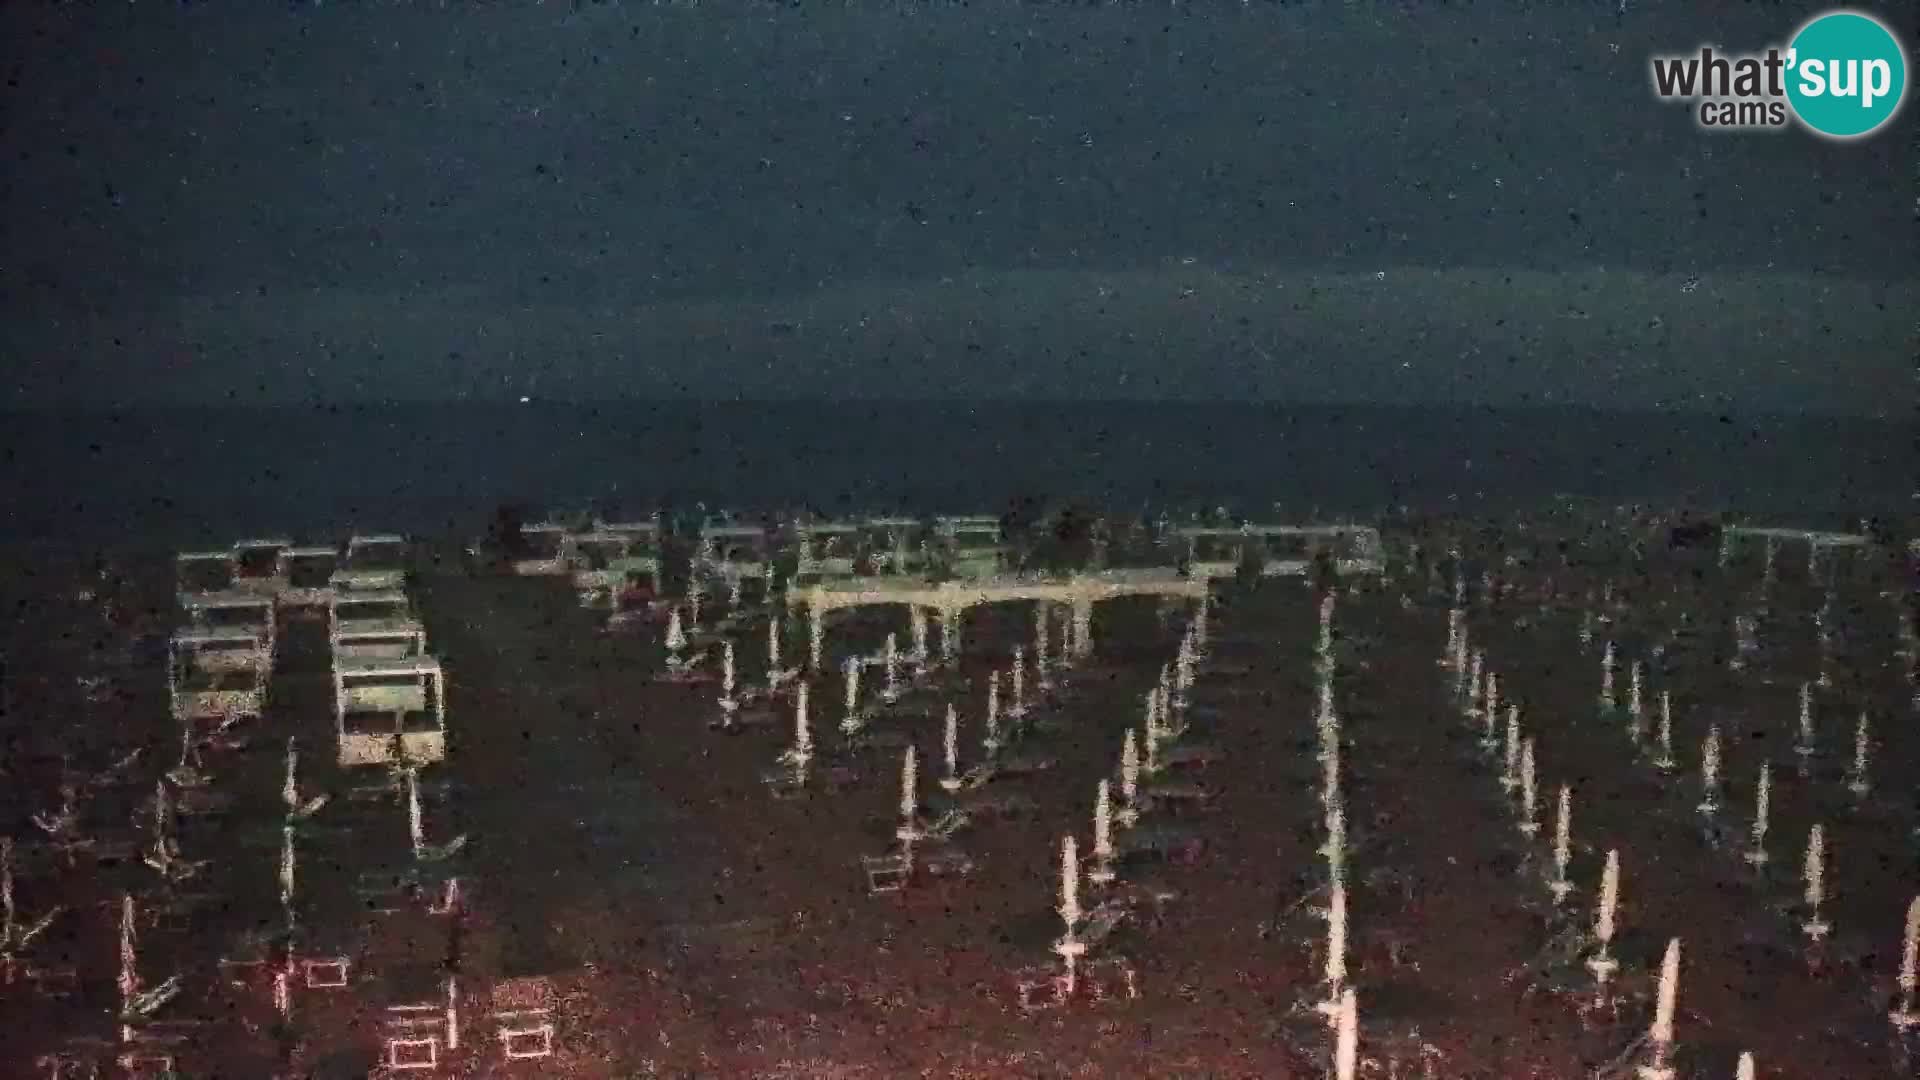 La plage de Bibione webcam en direct | Italien